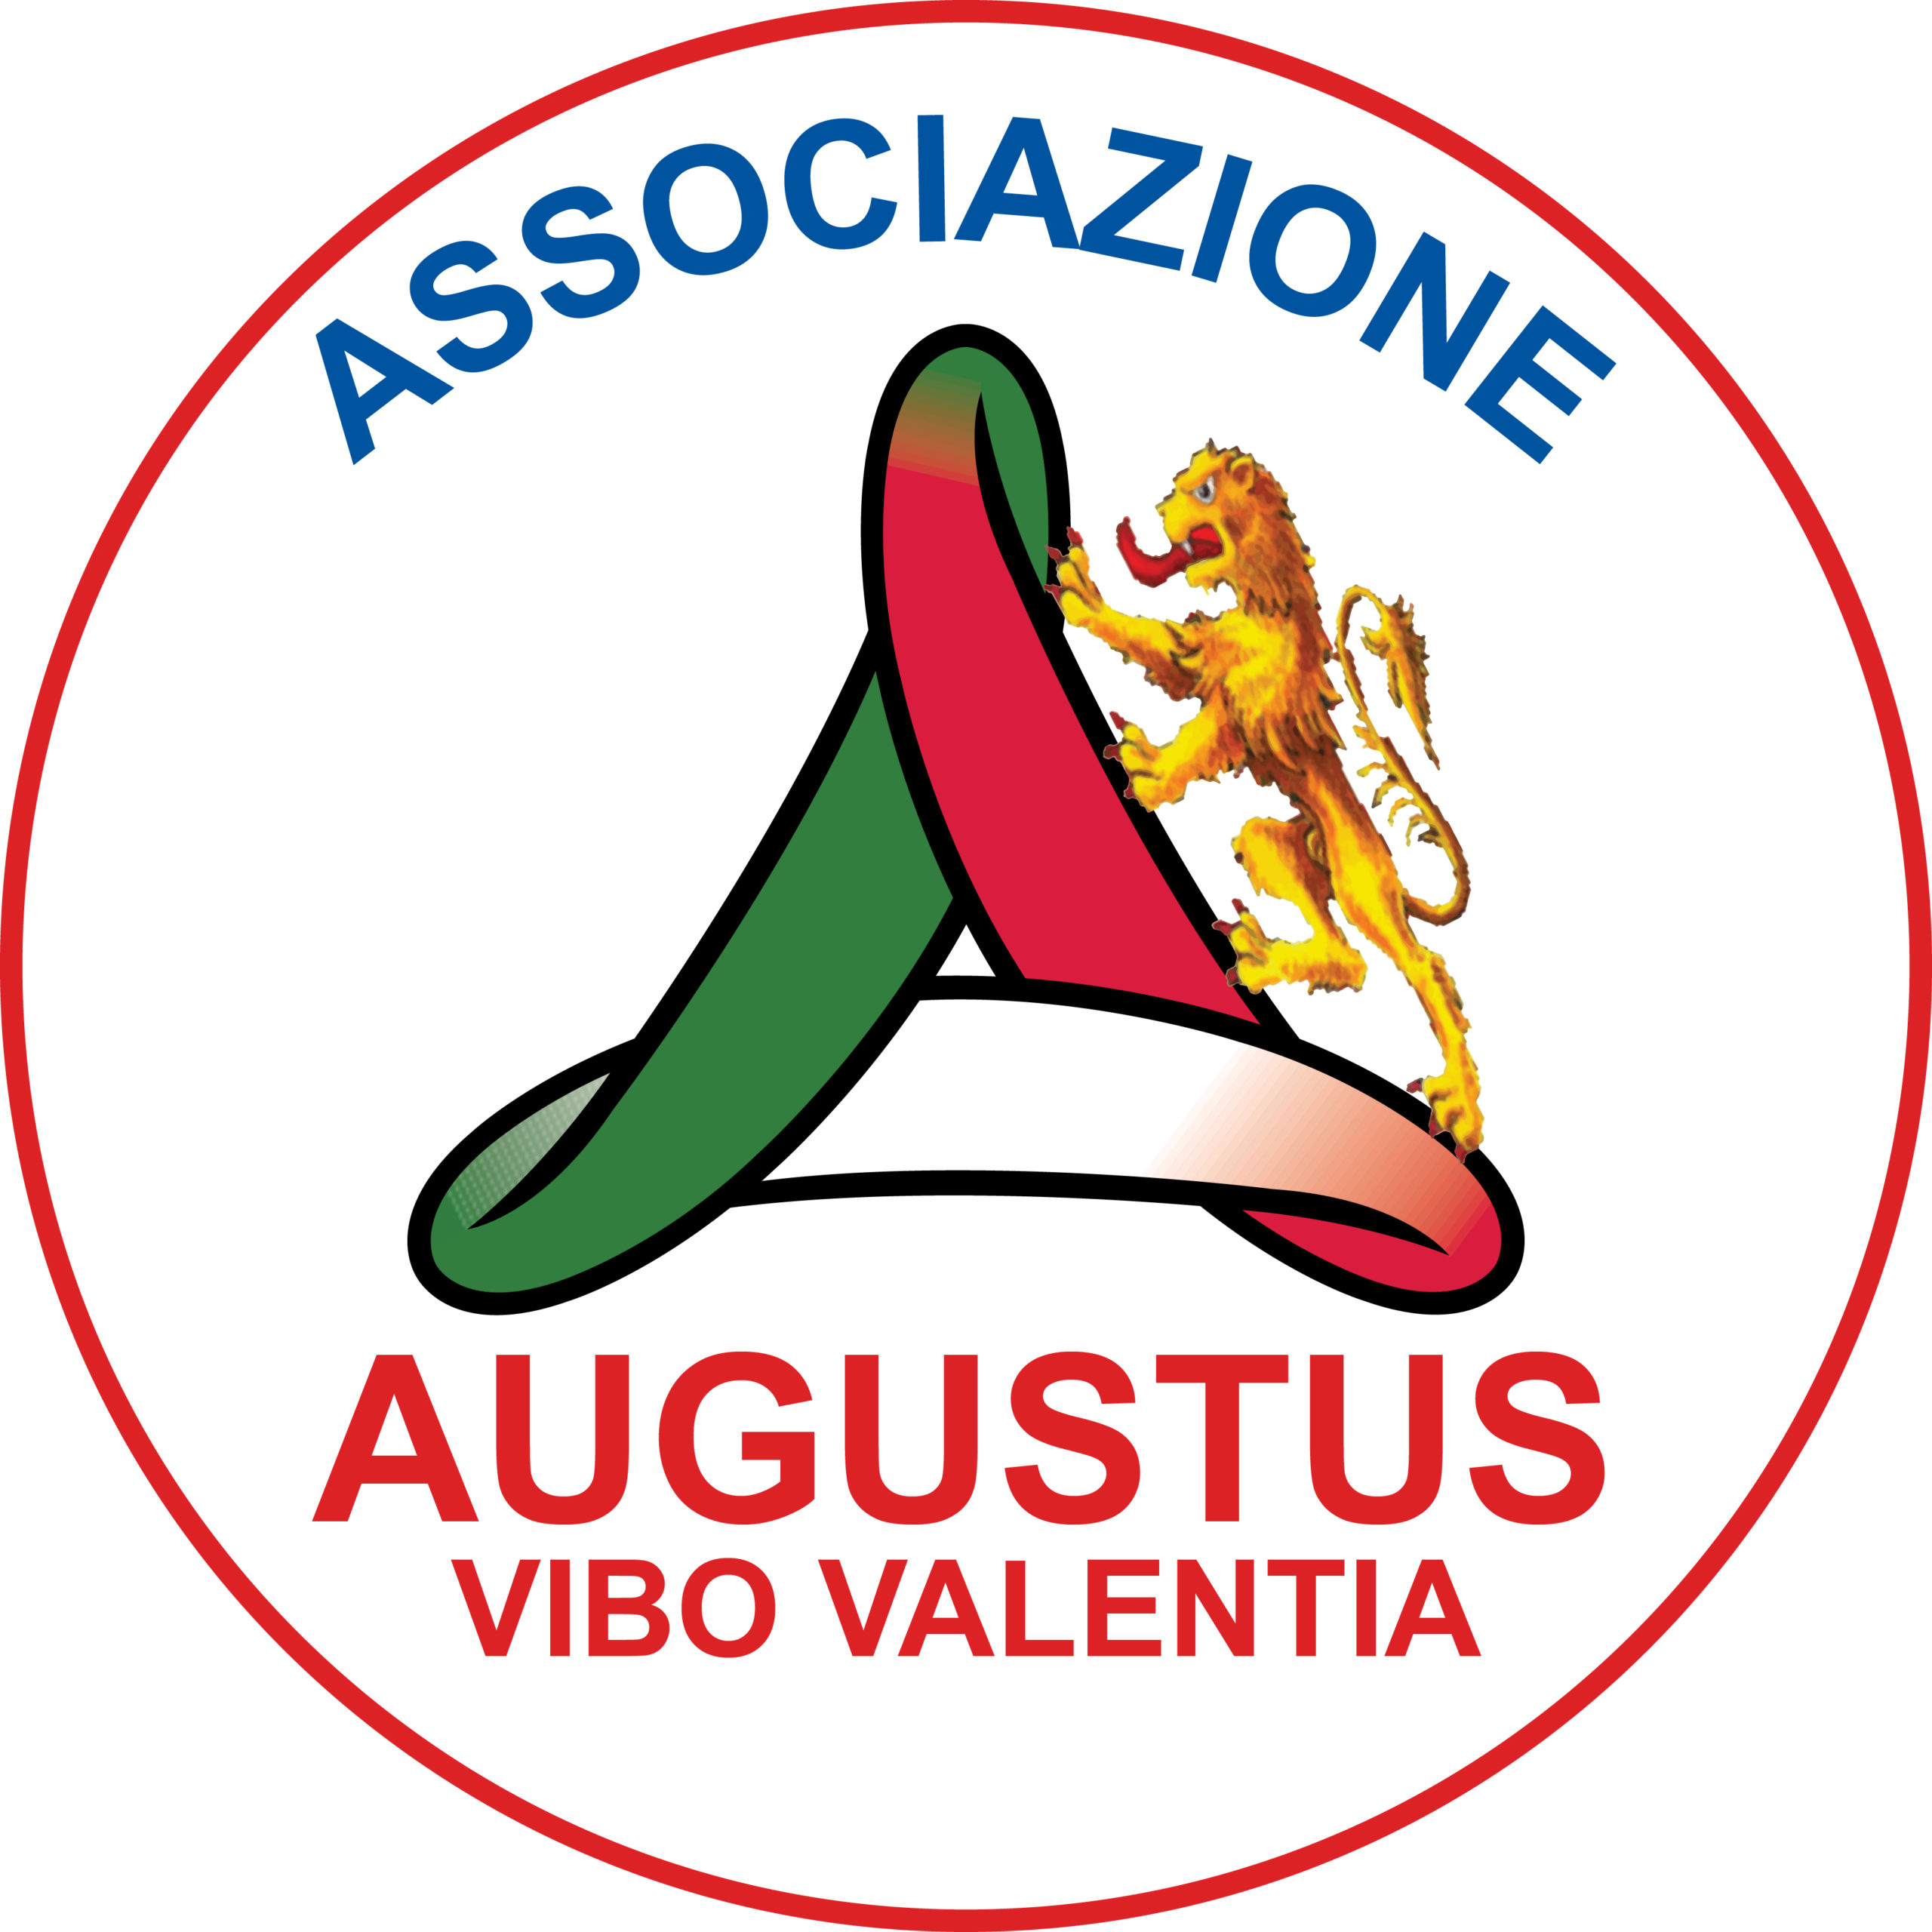 Augustus Vibo Valentia